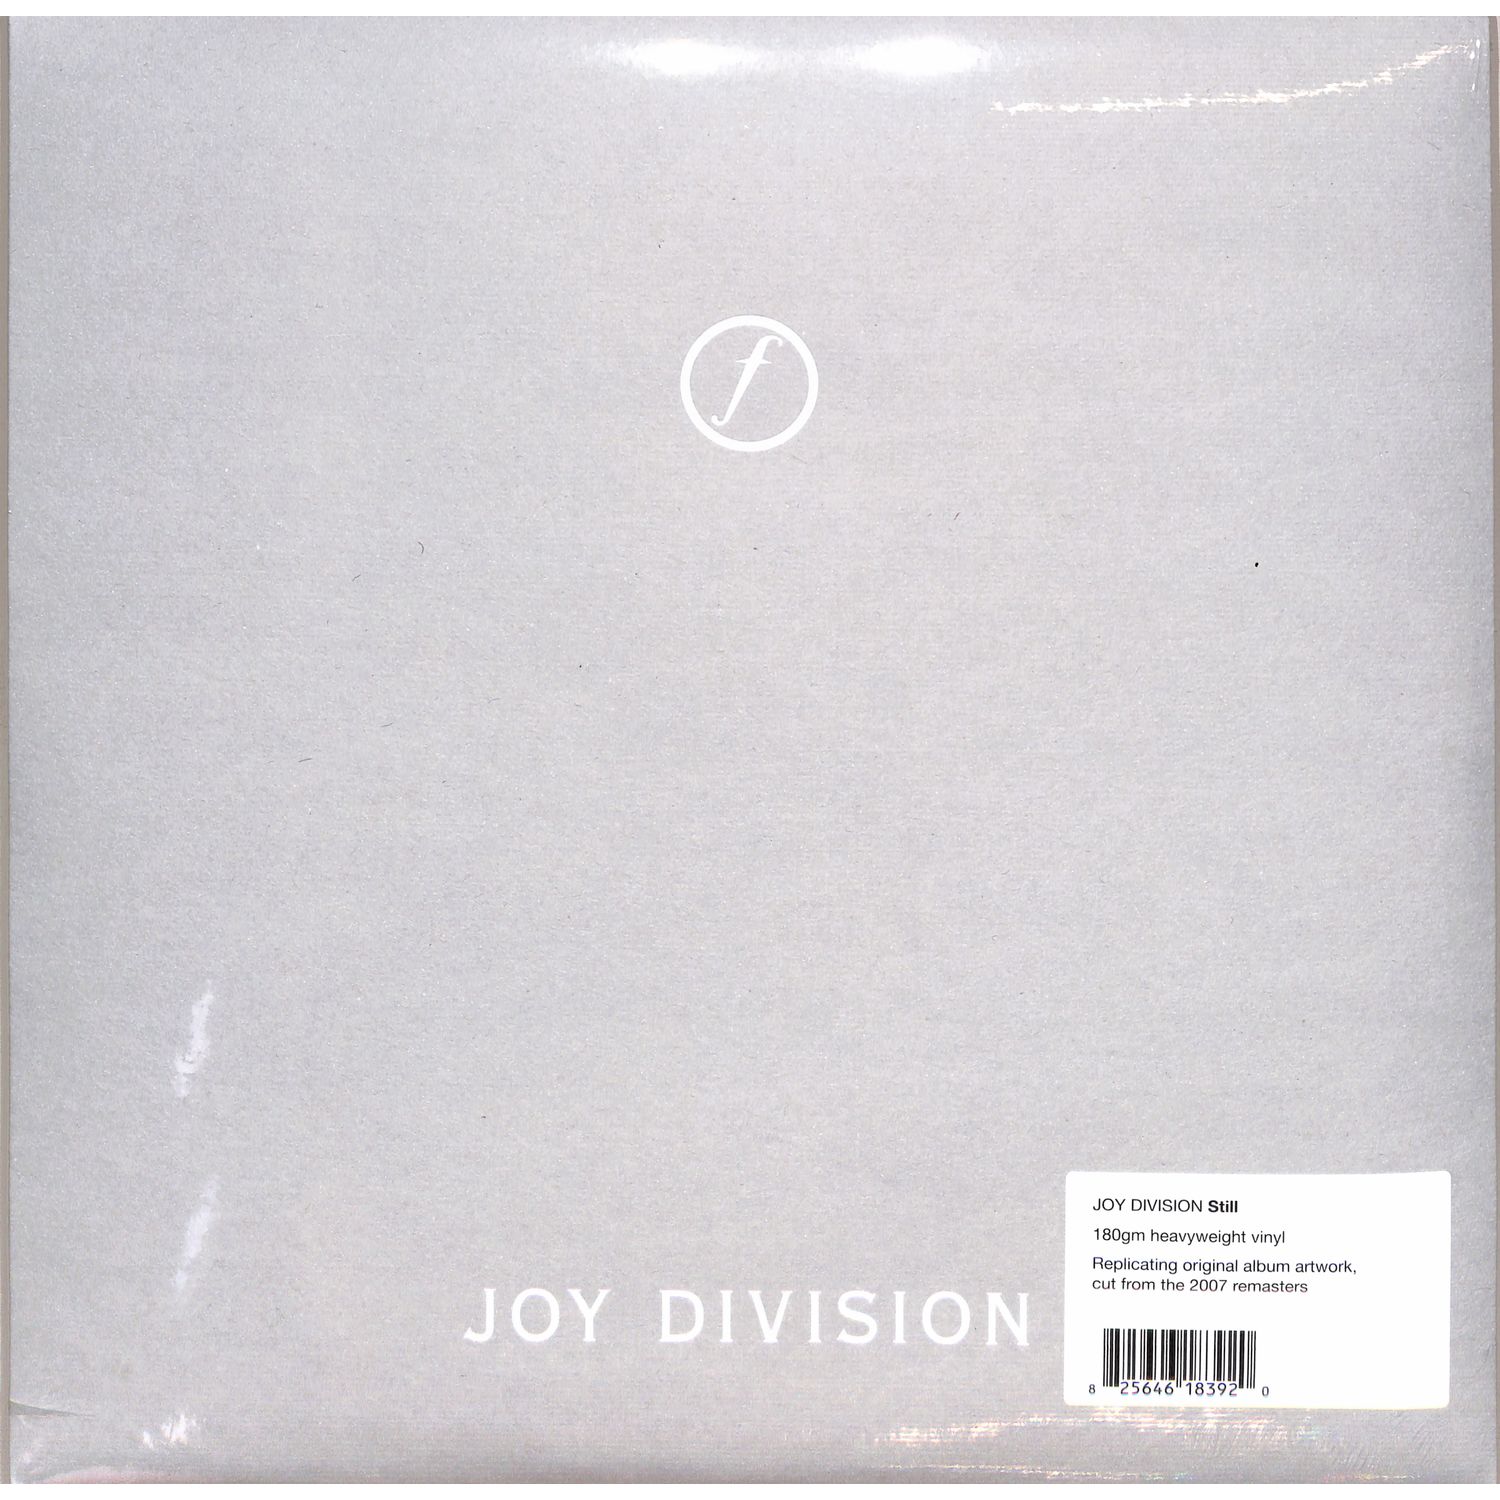 Joy Division - STILL 